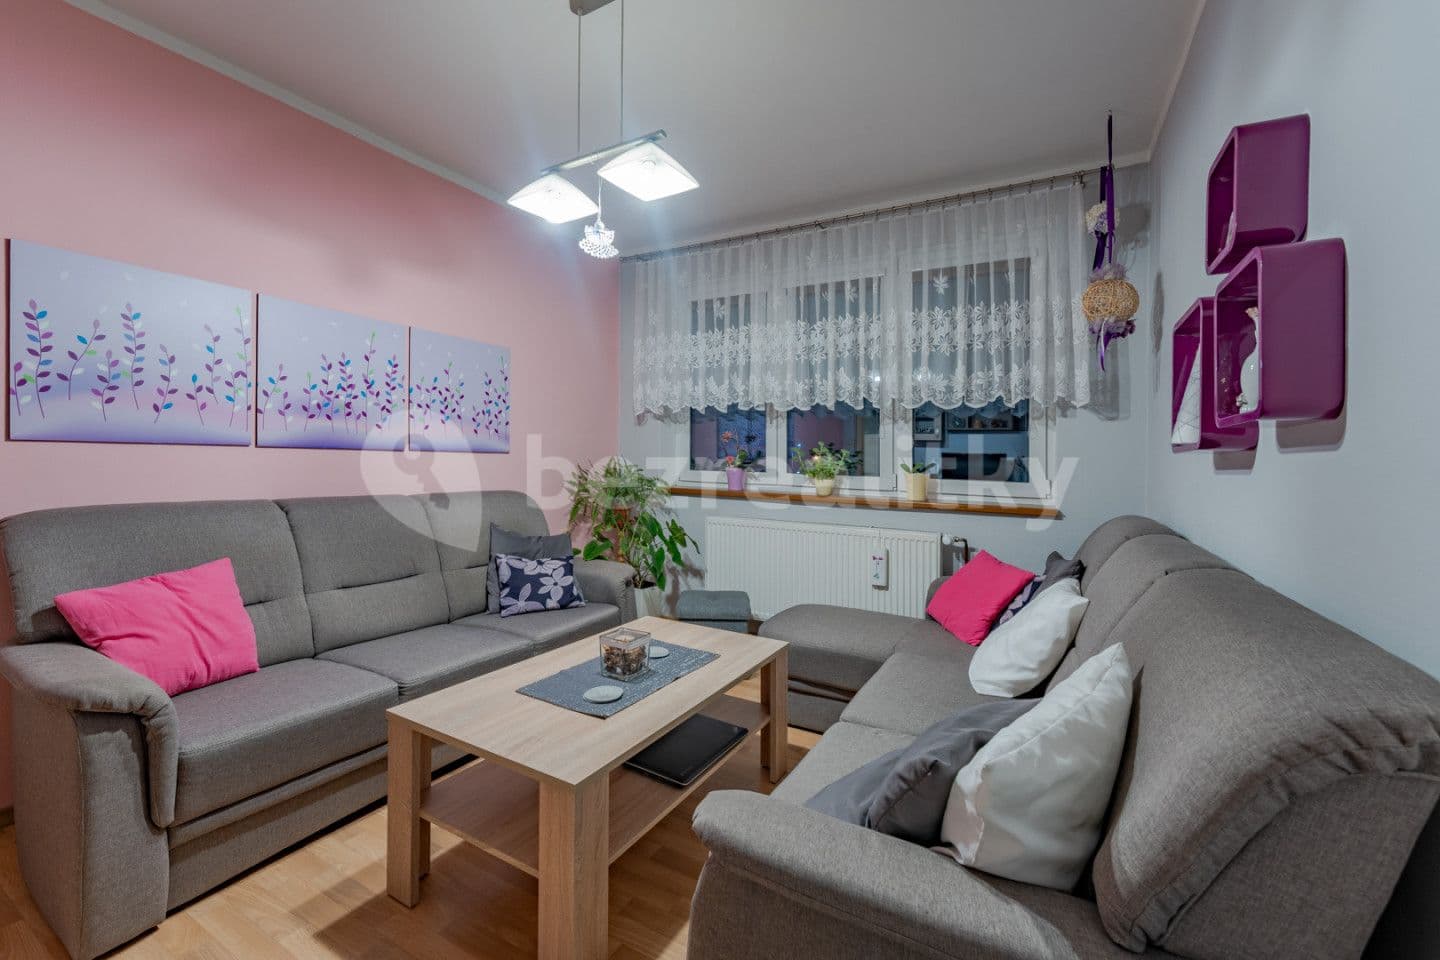 4 bedroom flat for sale, 82 m², Střelná, Zlínský Region